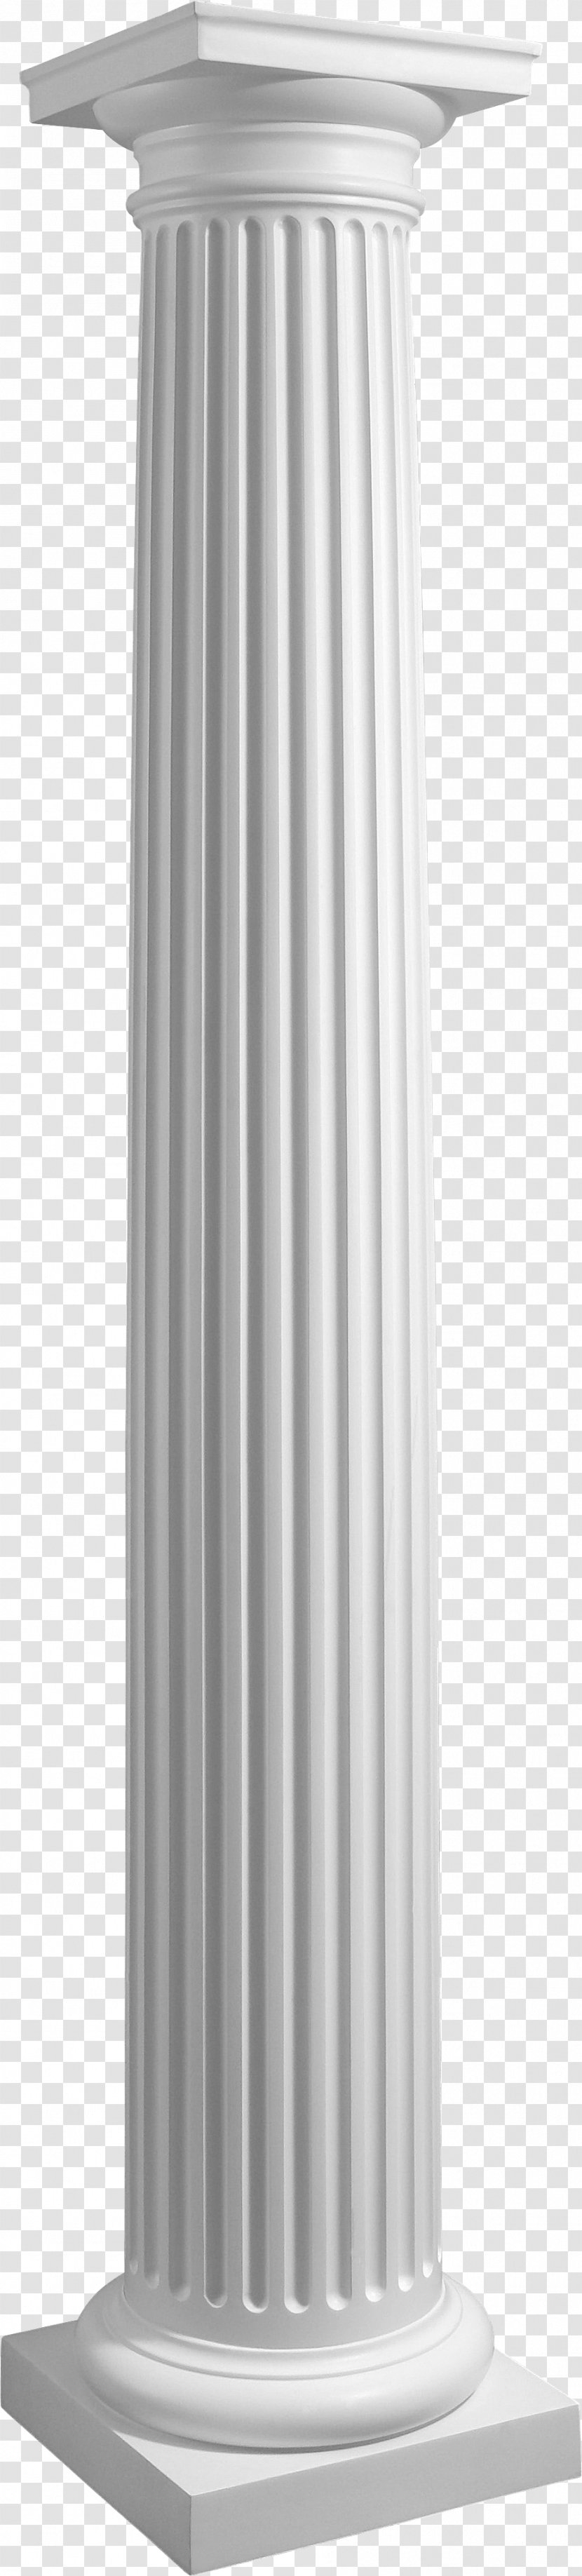 Column Post Ancient Roman Architecture Capital - Structure - Porch Pillars Transparent PNG